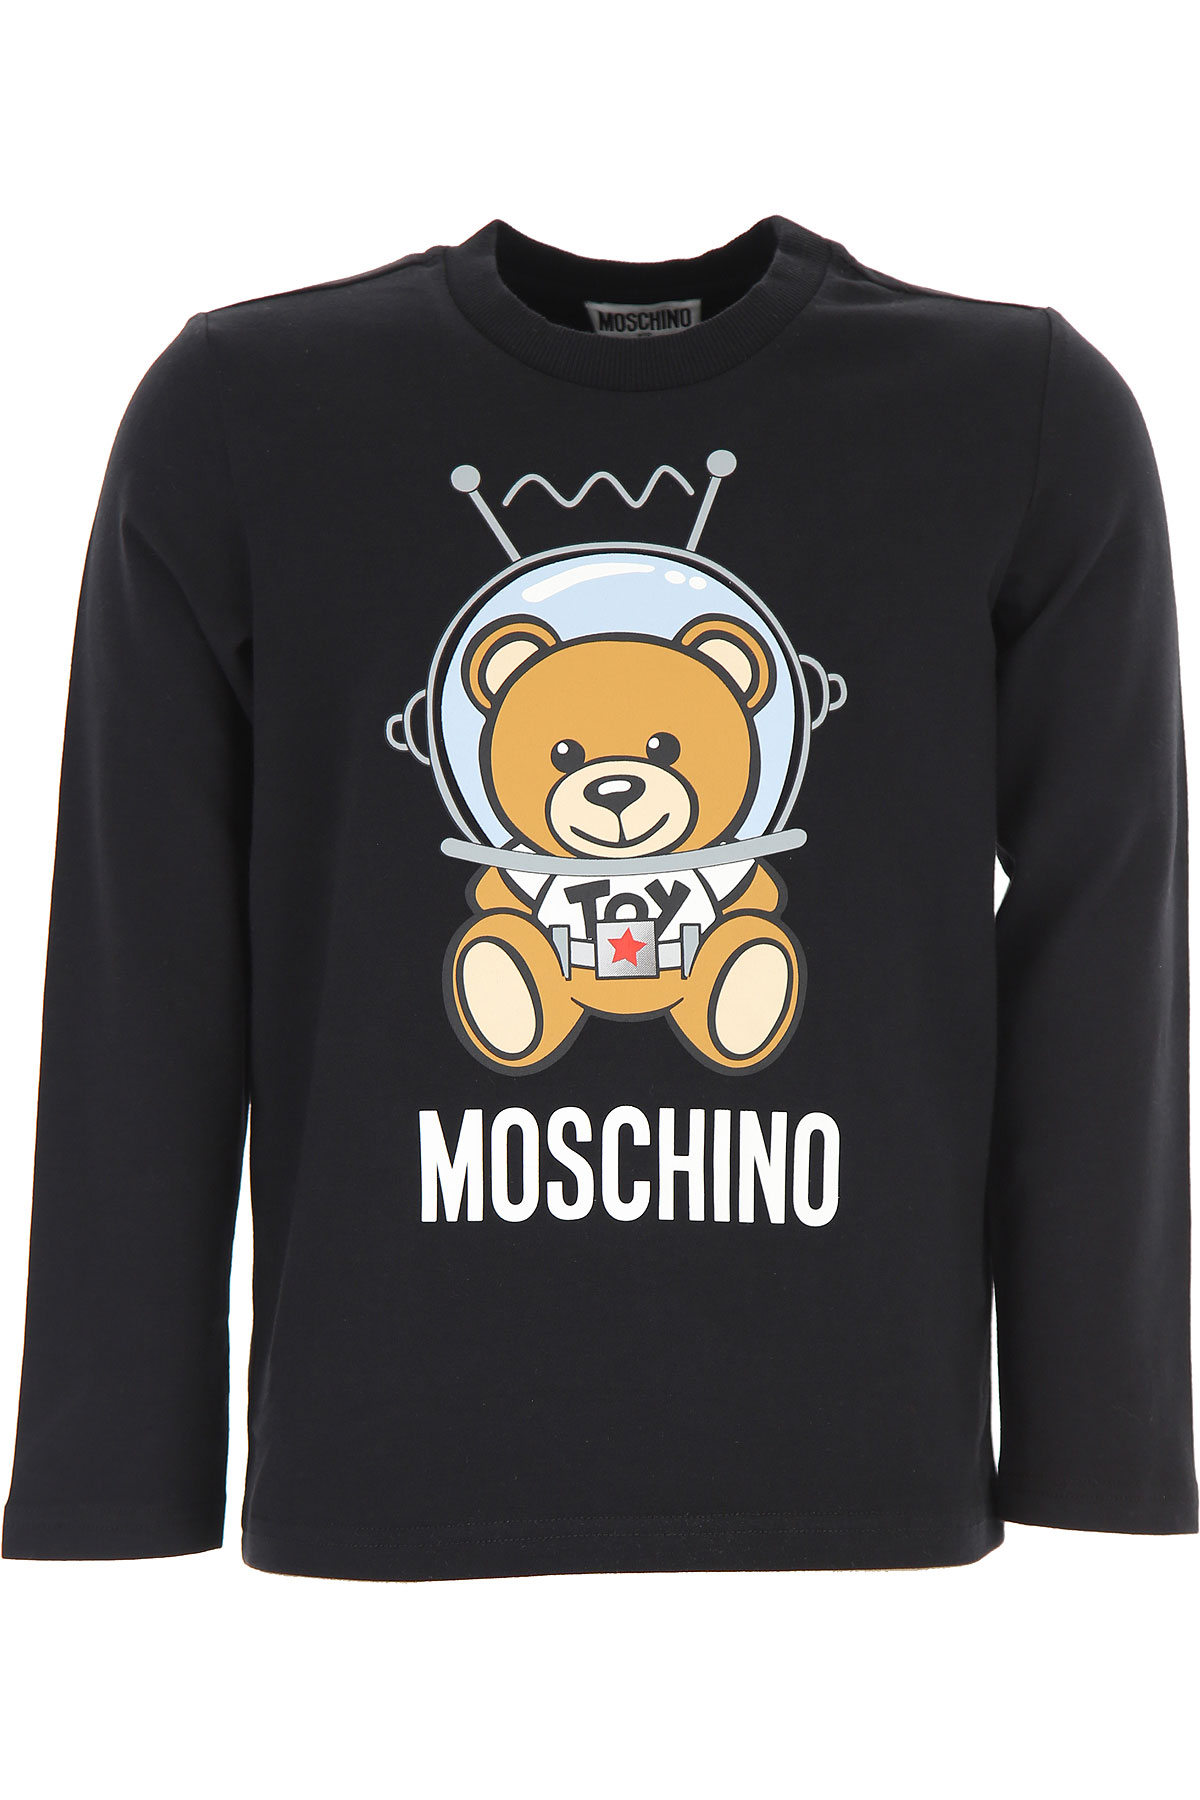 Moschino Kinder T-Shirt für Jungen Günstig im Sale, Schwarz, Baumwolle, 2017, 10Y 12Y 14Y 4Y 5Y 6Y 8Y